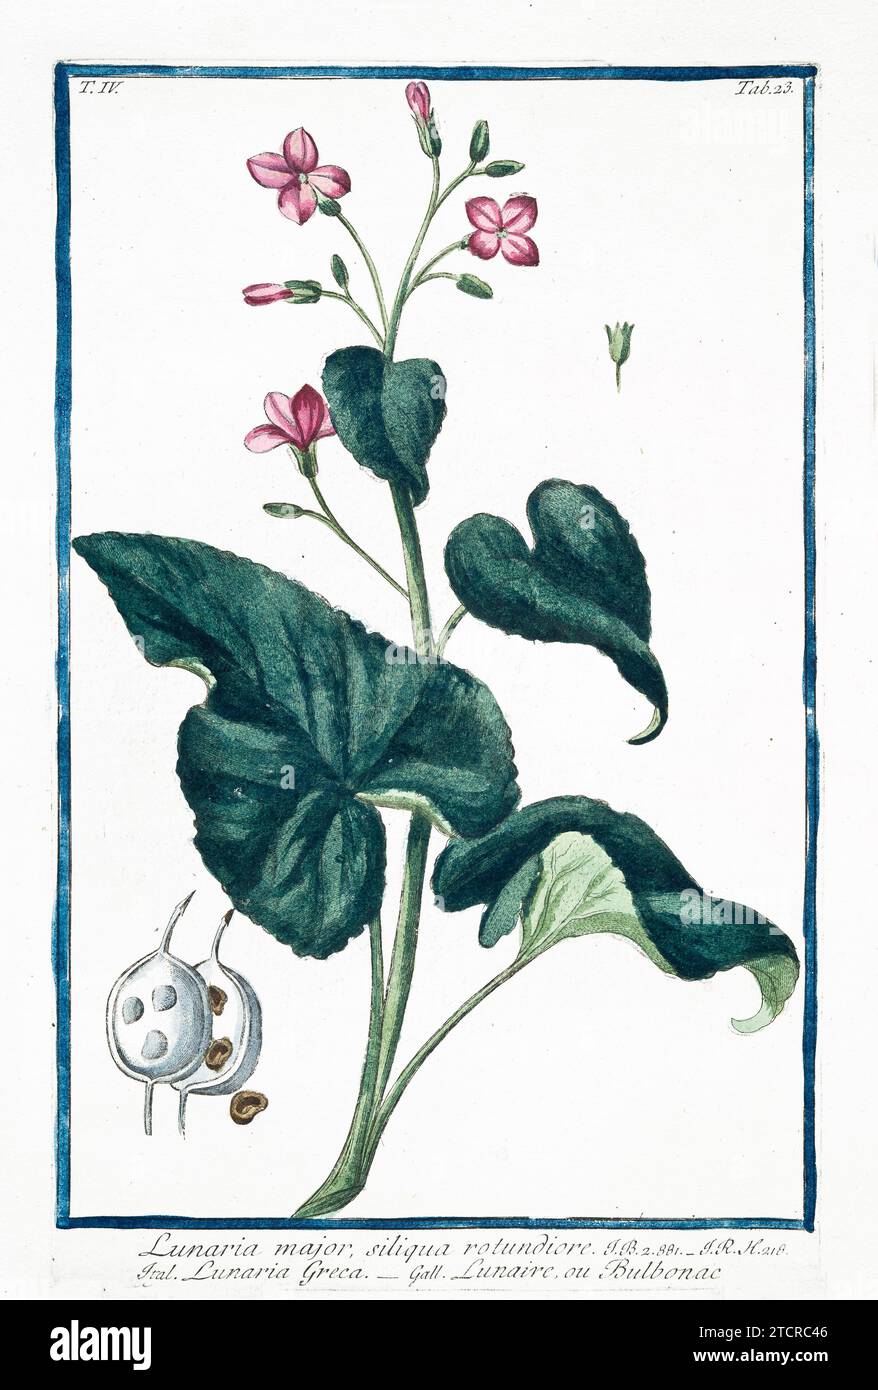 Vieja ilustración de la honestidad perenne. Por G. Bonelli en Hortus Romanus, publ. N. Martelli, Roma, 1772 – 93 Foto de stock